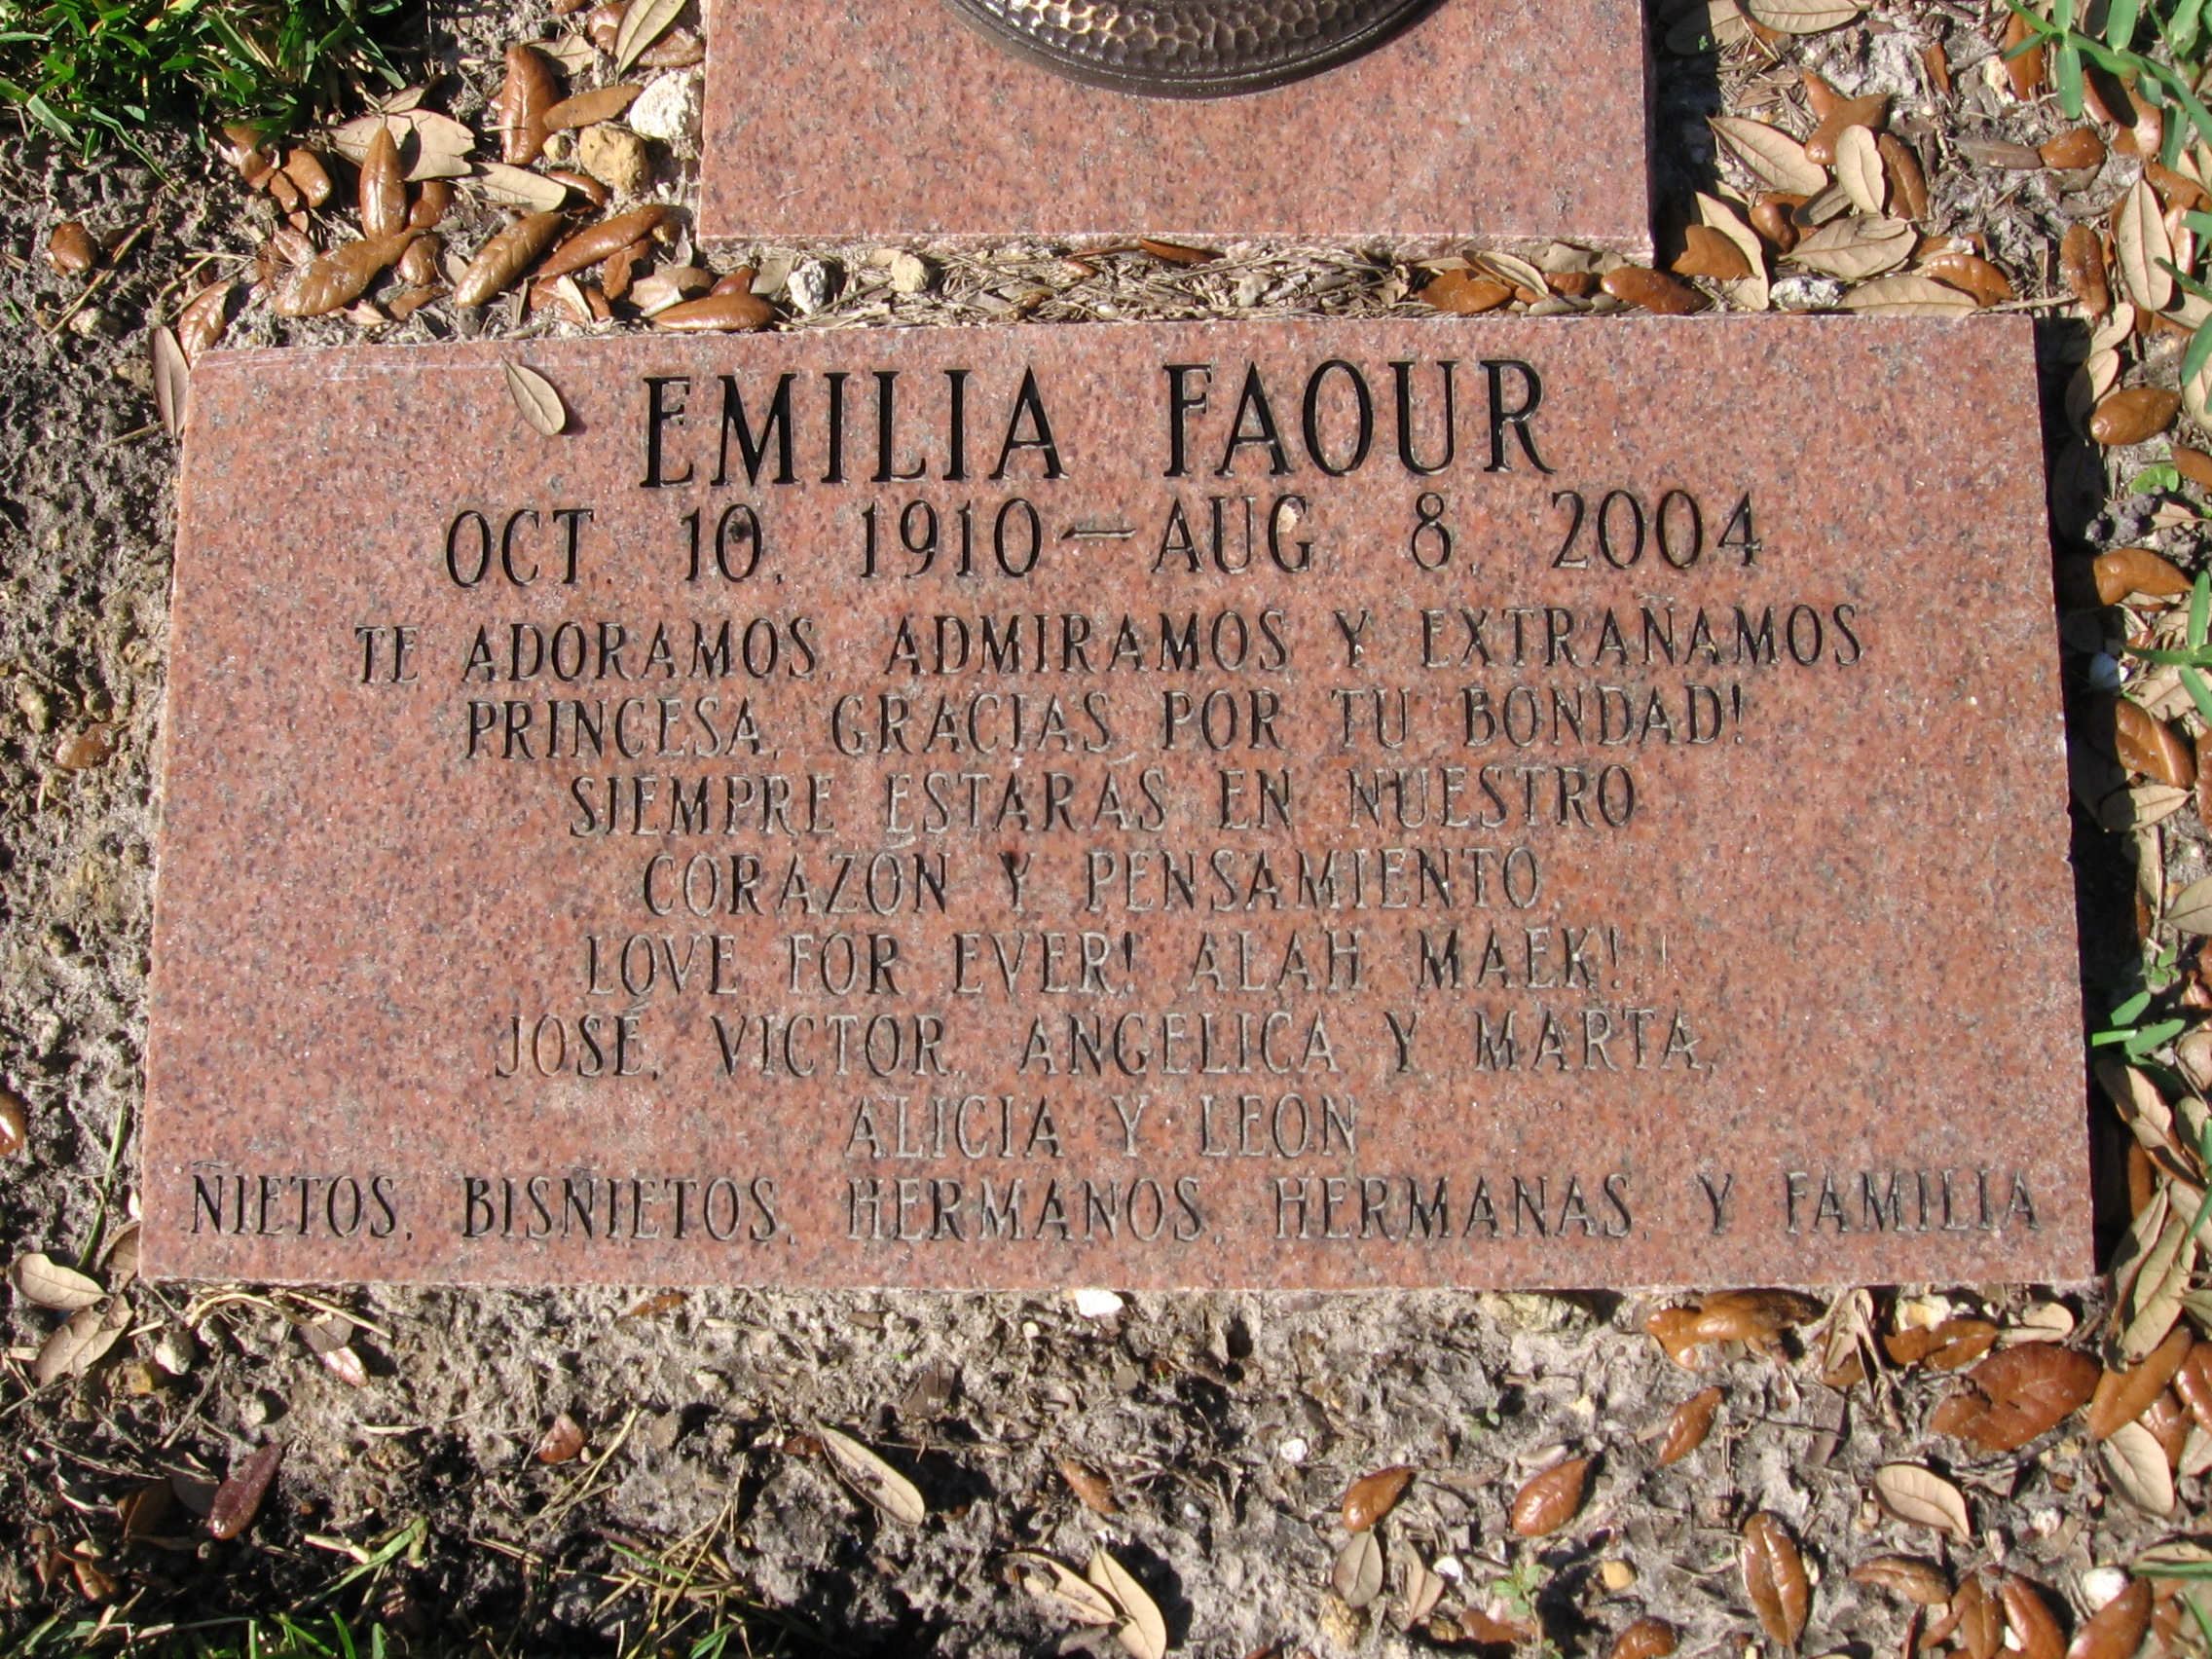 Emilia Faour